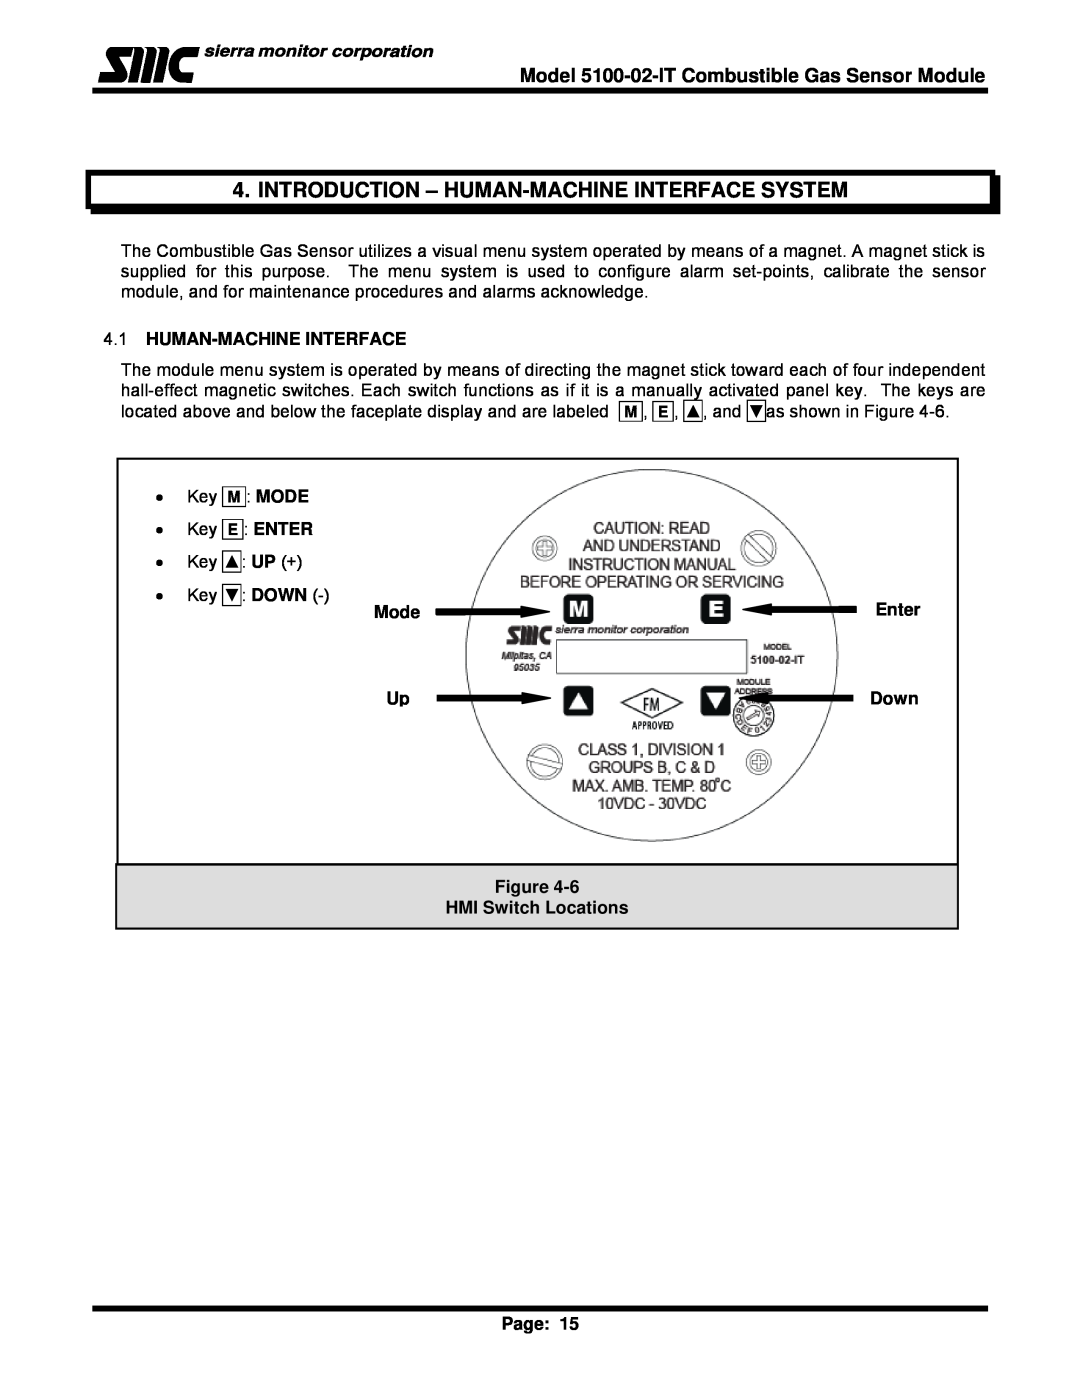 Univex 5100-02-IT Introduction - Human-Machineinterface System, 4.1HUMAN-MACHINEINTERFACE, M Mode, E Enter, Down 